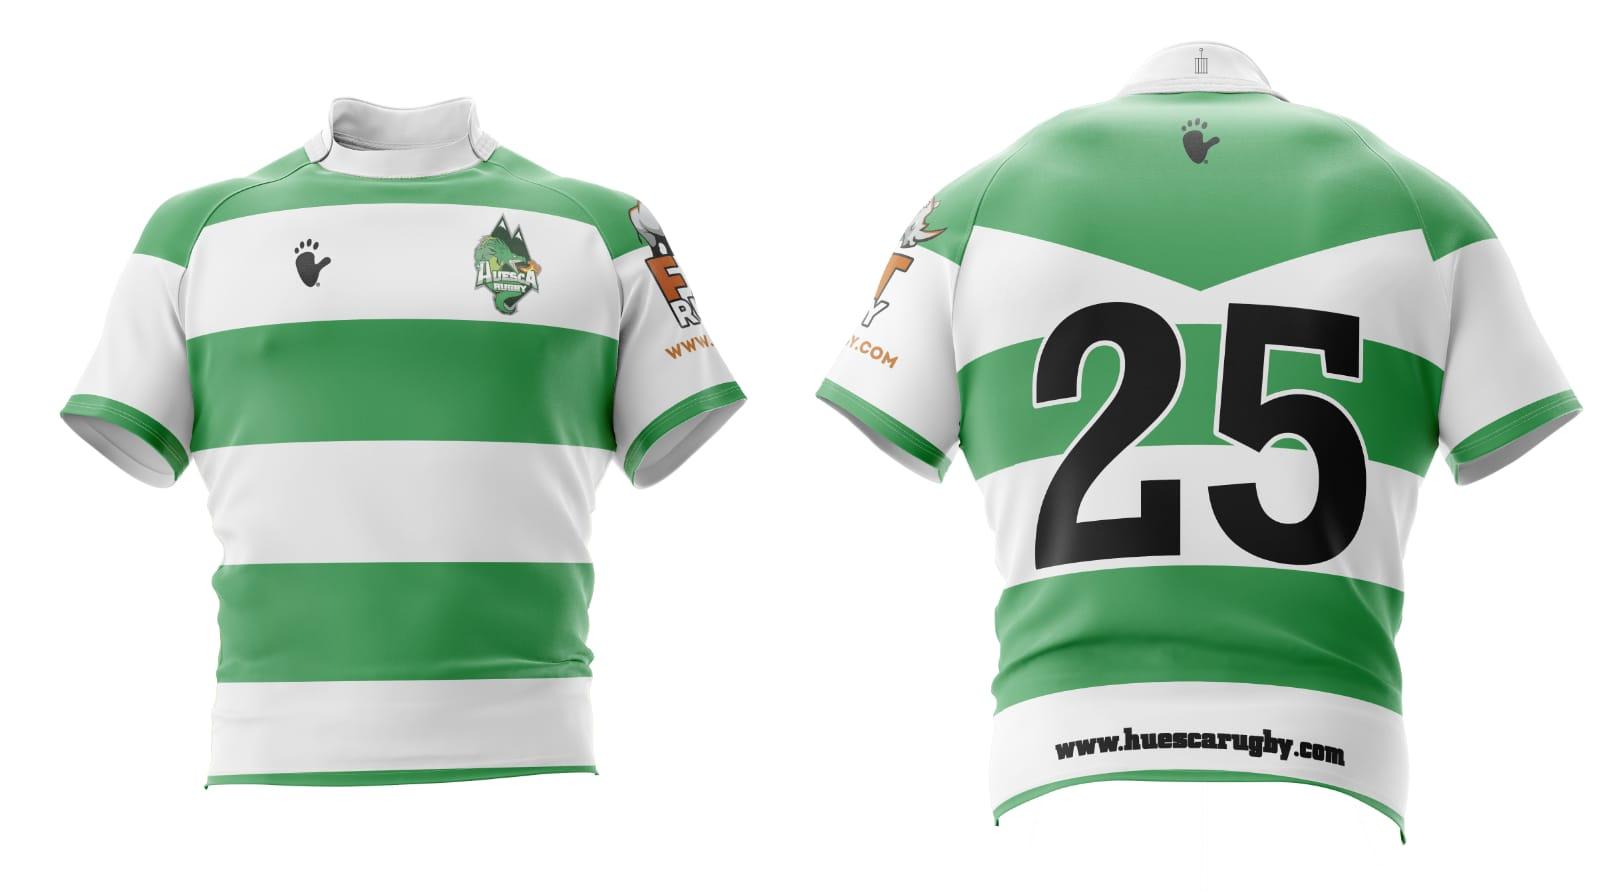 Camiseta Juego Huesca Rugby - Talla XXL